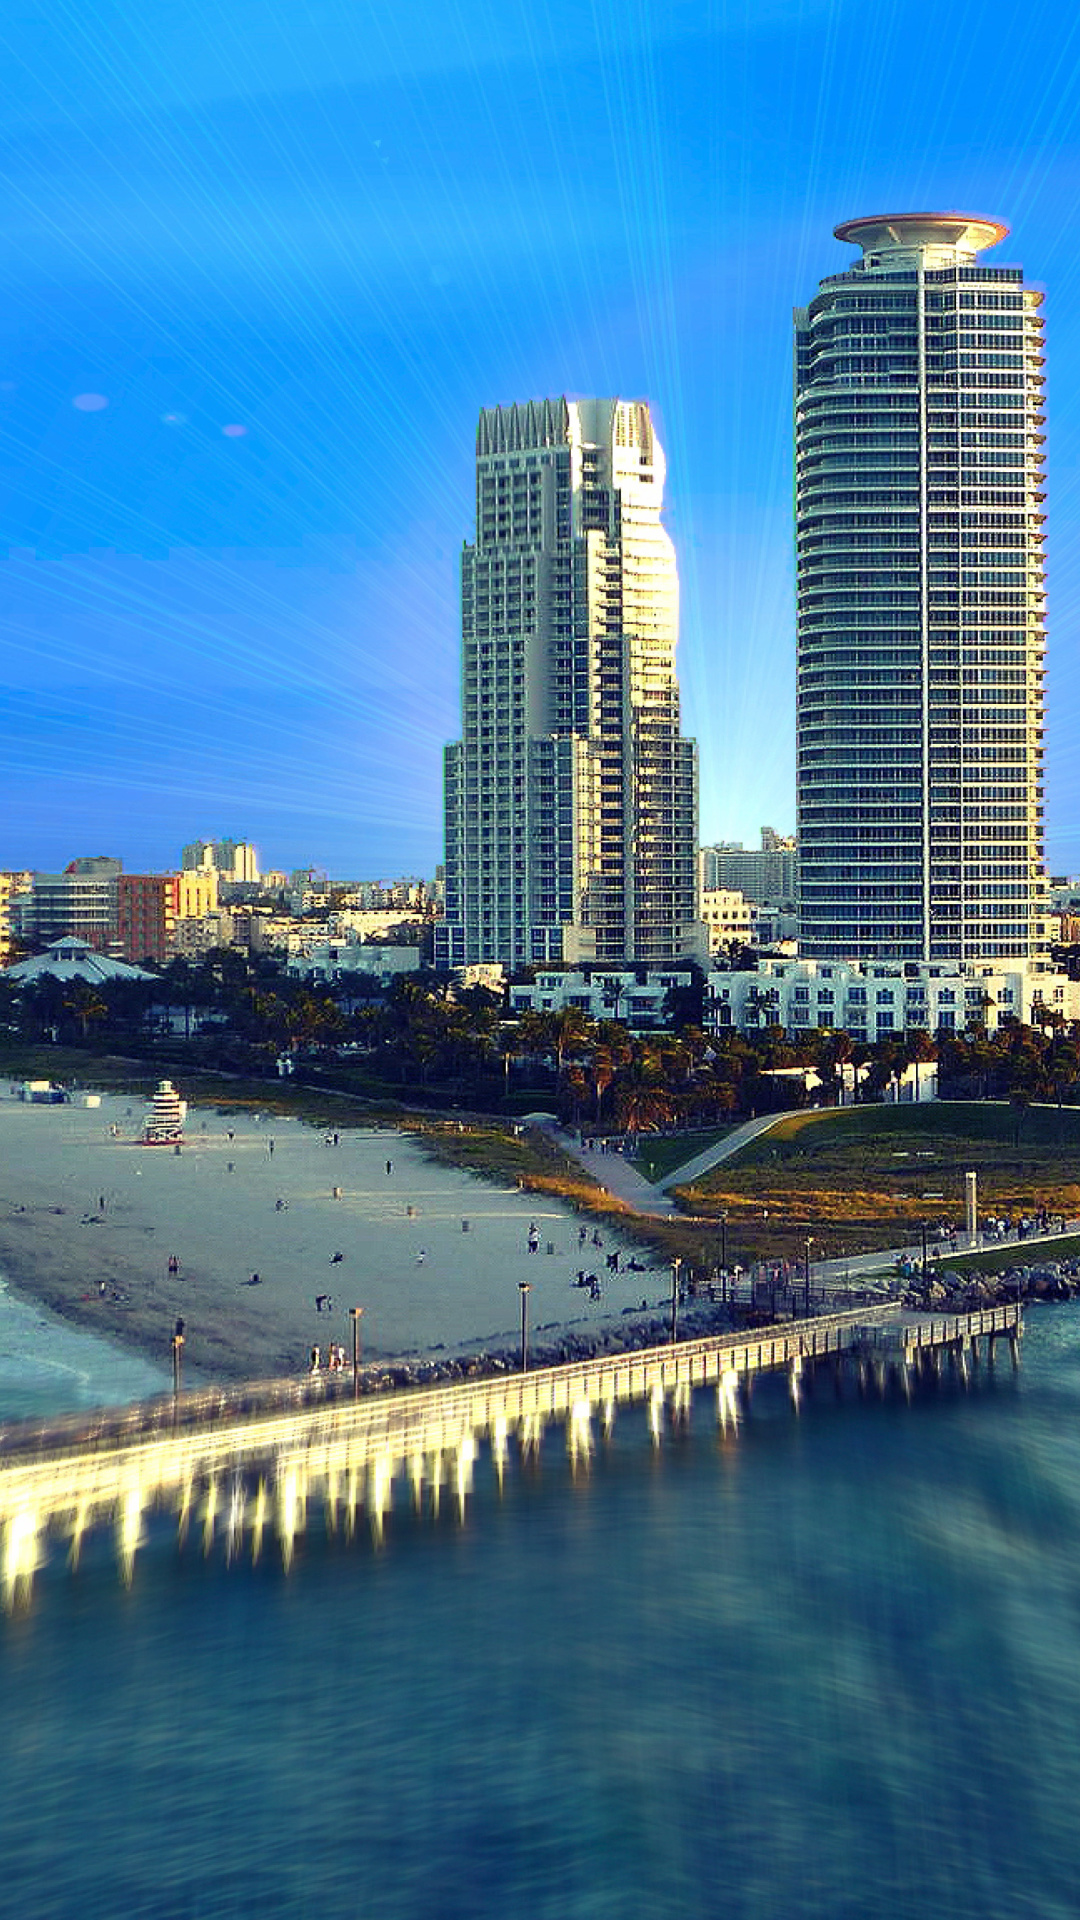 Sfondi Miami Beach with Hotels 1080x1920